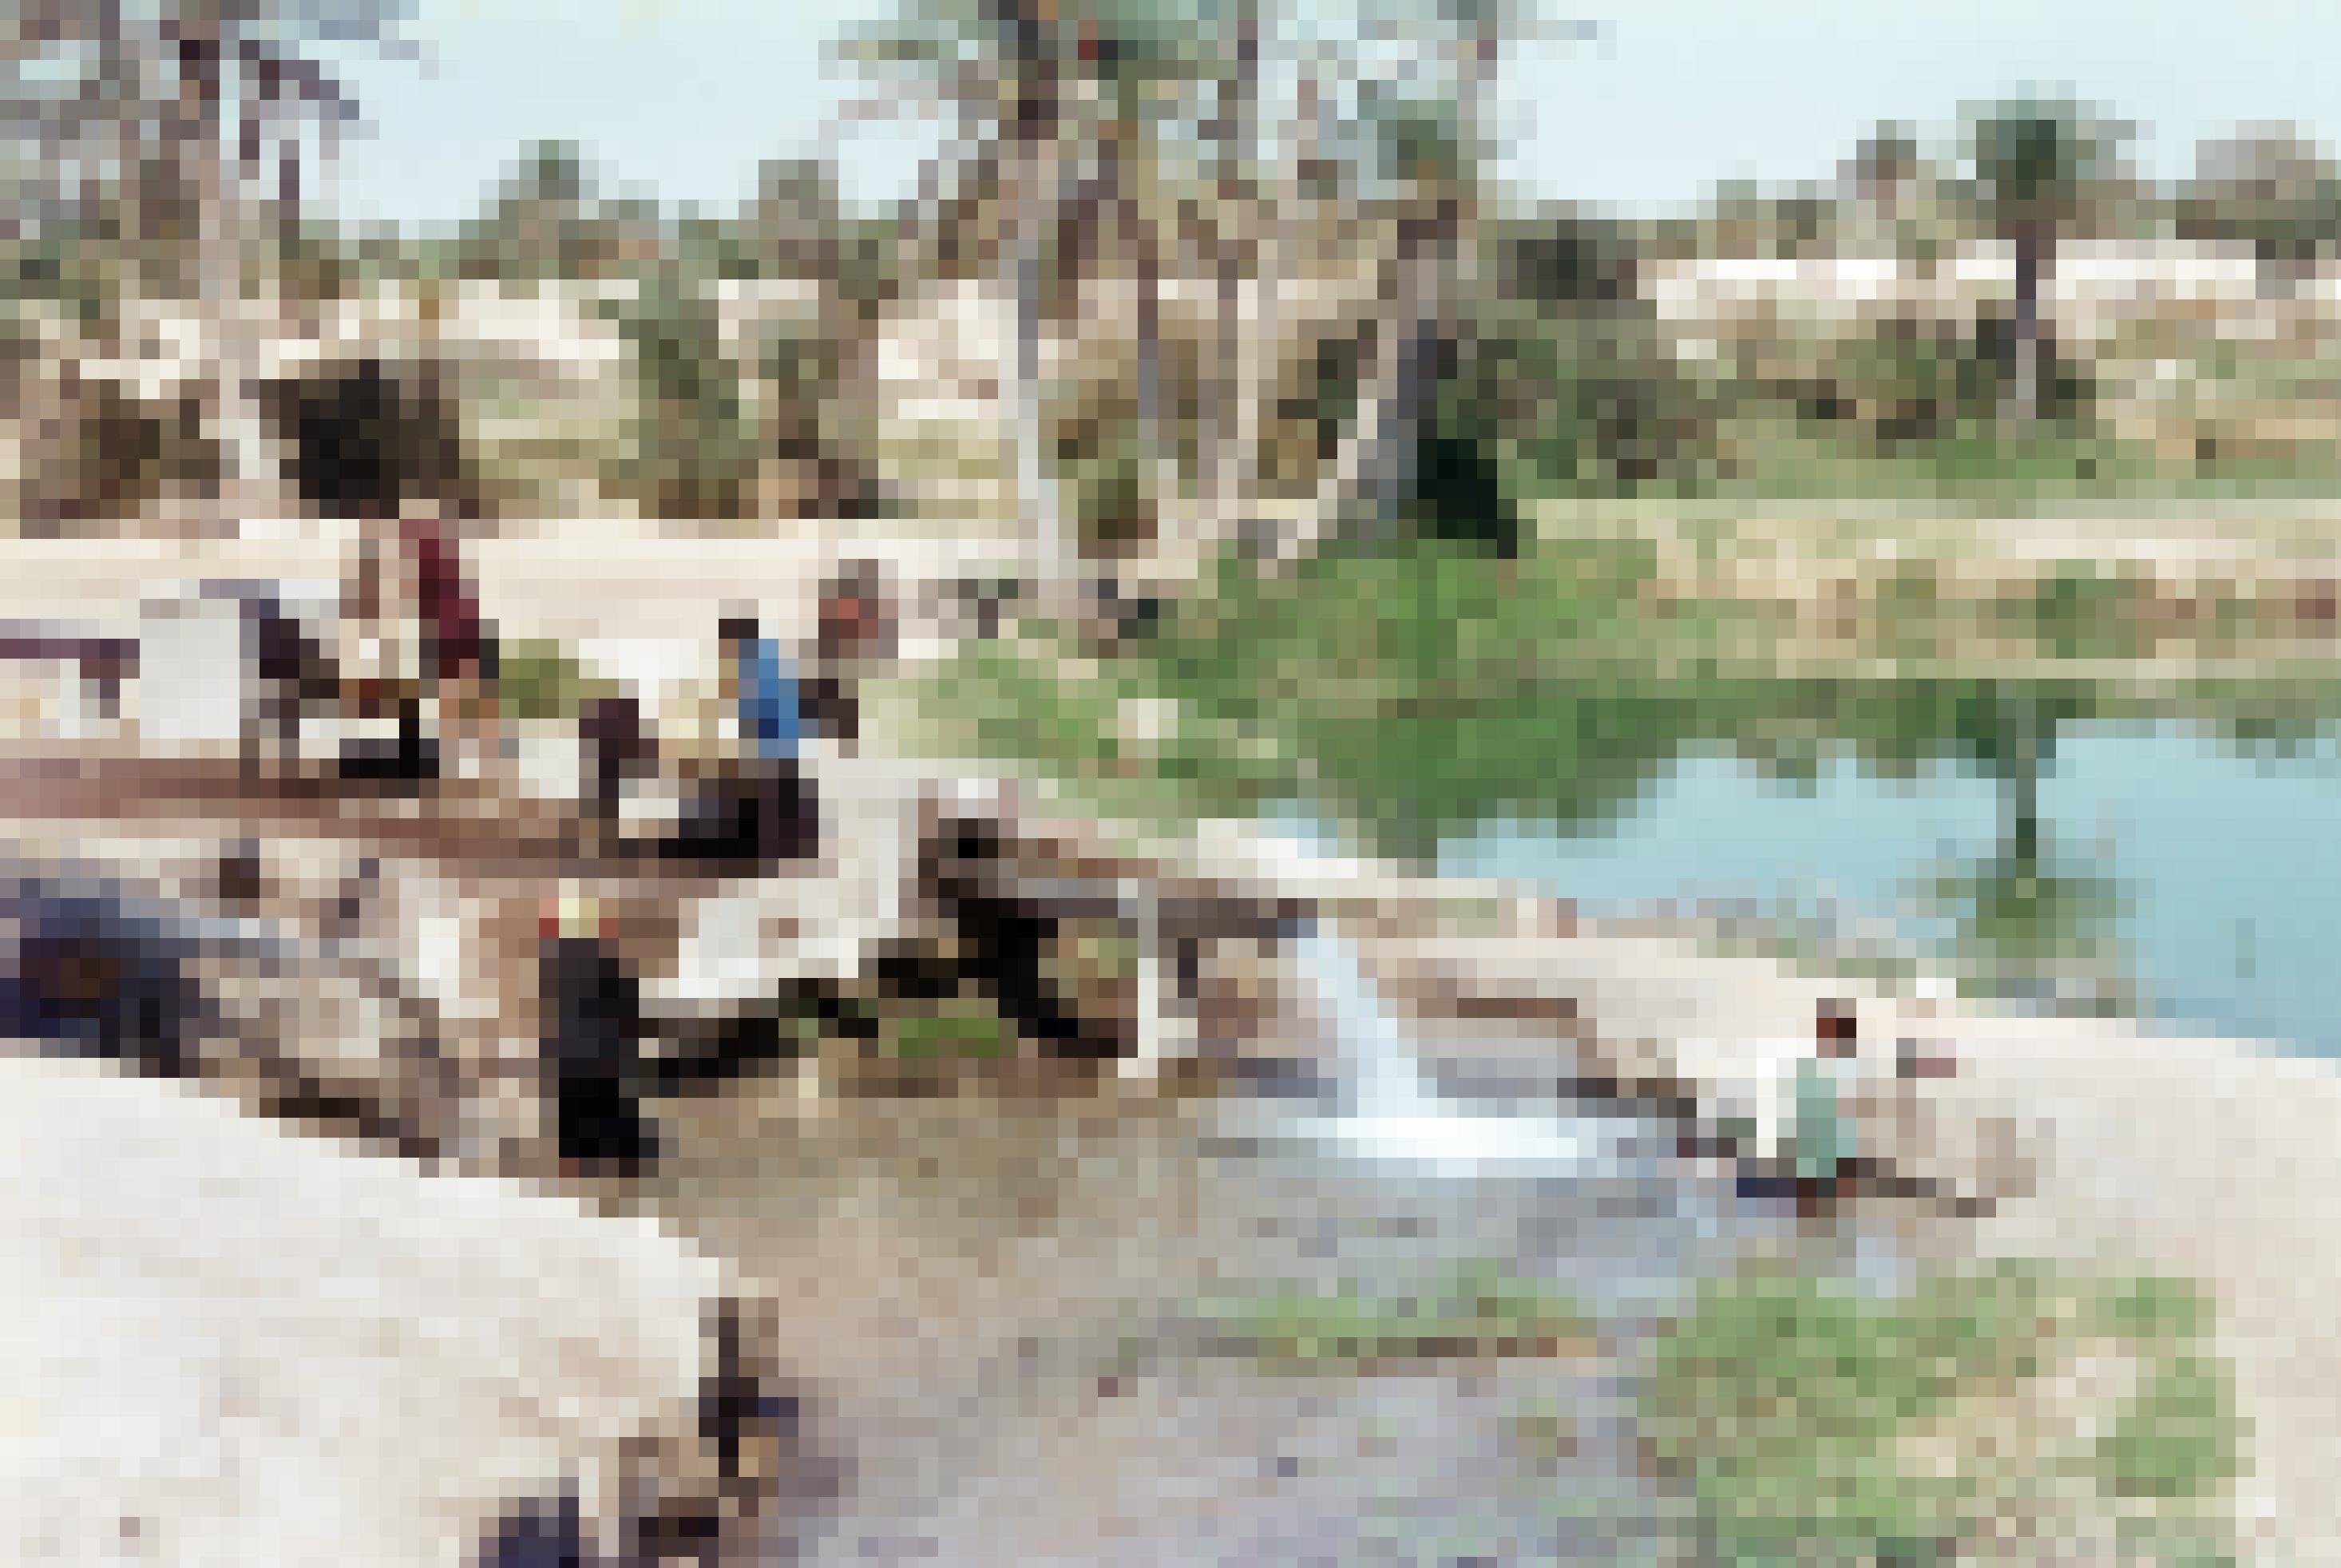 Historisches Foto: Tunesische Familie besorgt sich ihren Wasservorrat an einer Quelle in der Oase von Kebili. Ein Esel trägt Wasserkanister, mehrere Personen sitzen am Rand der Quelle.